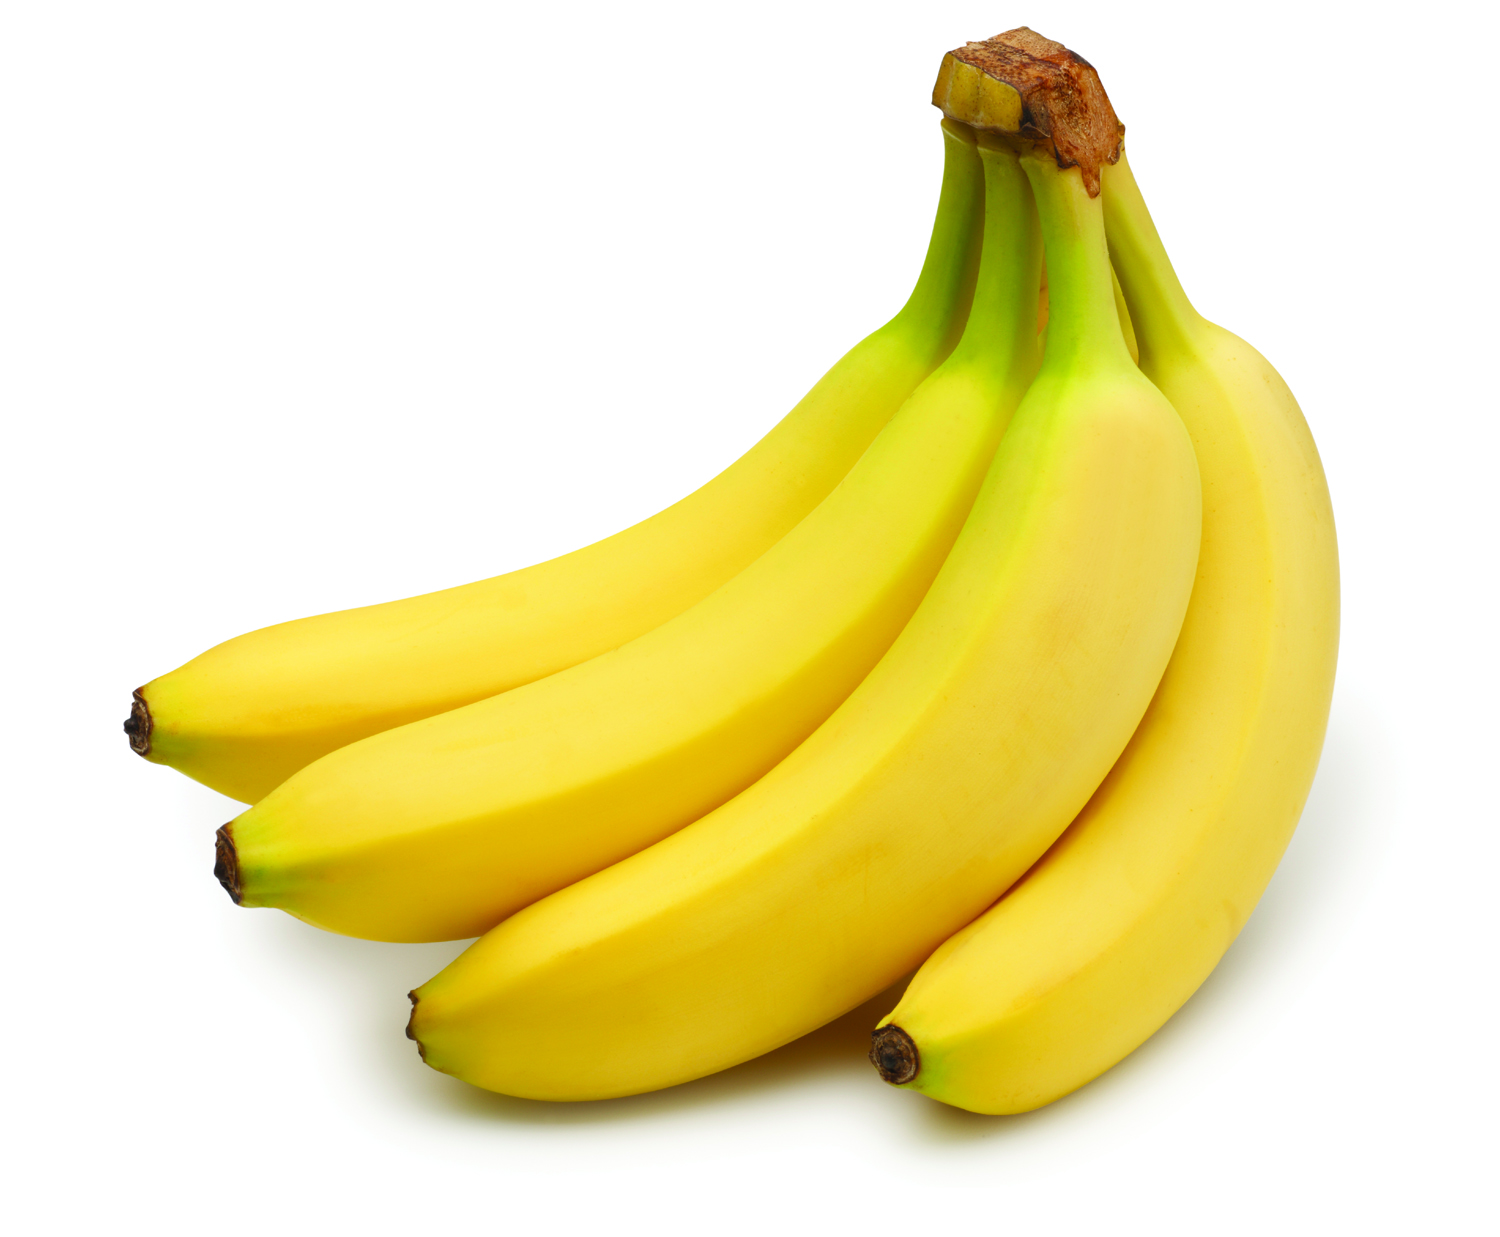 Banana #6